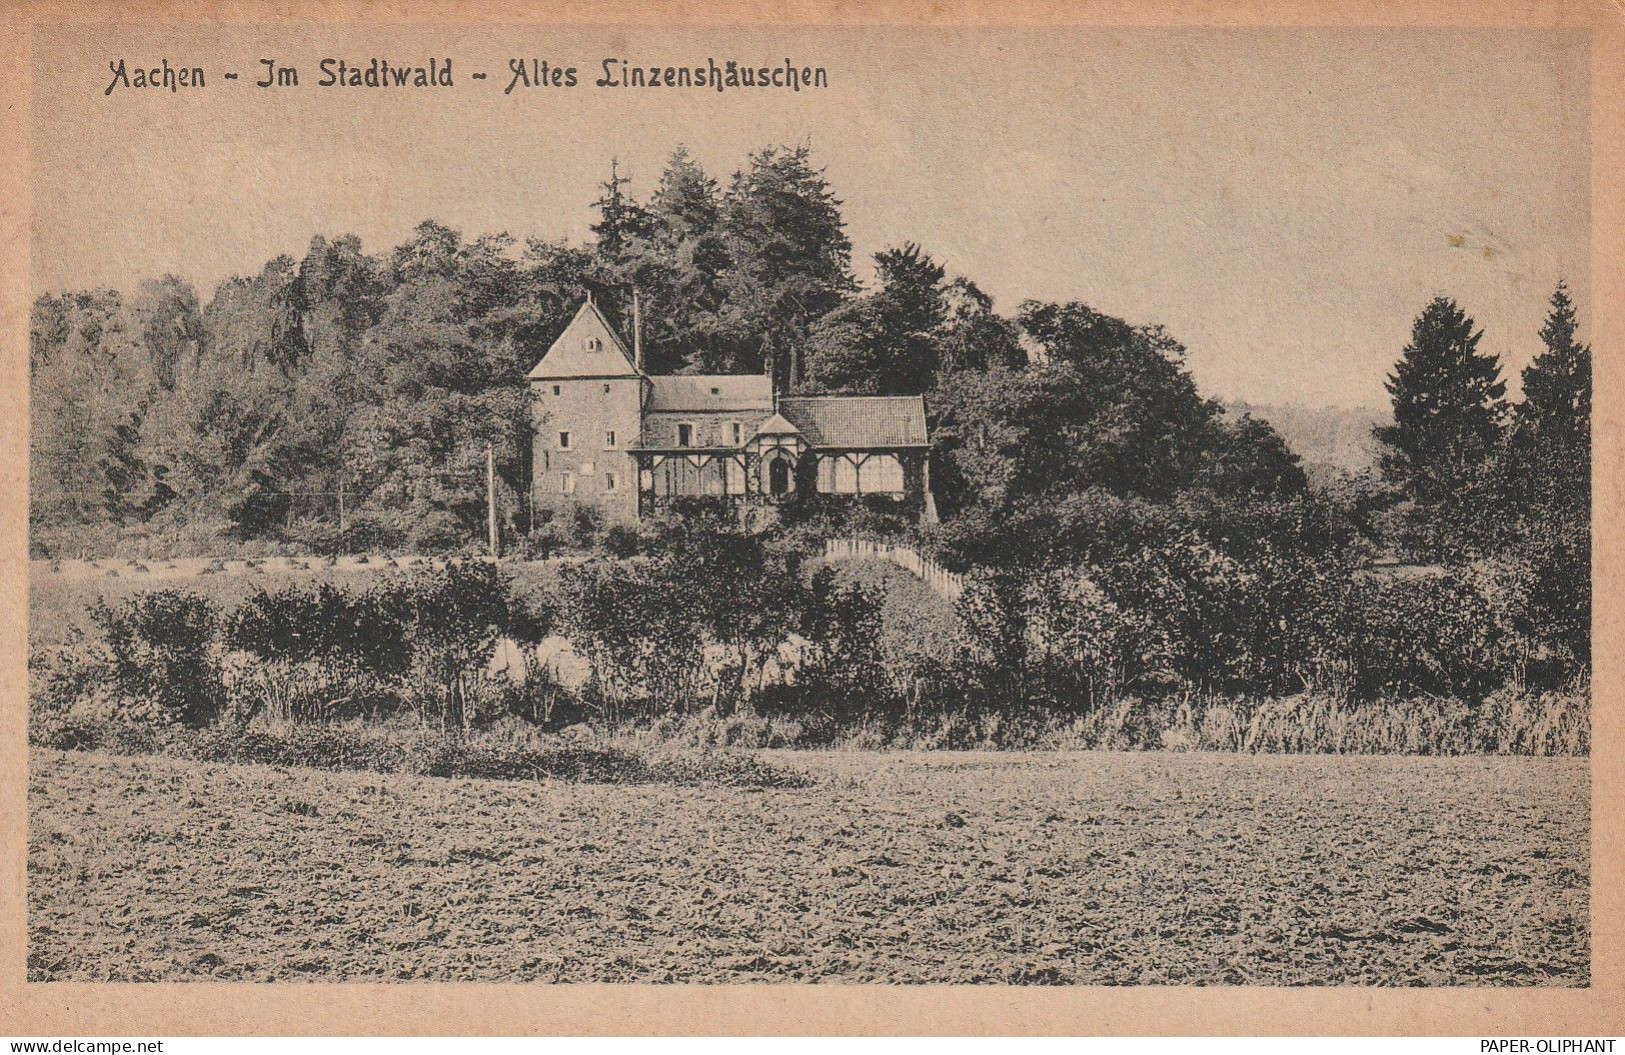 5100 AACHEN, Alt Linzenshäuschen Stadtwald - Aachen